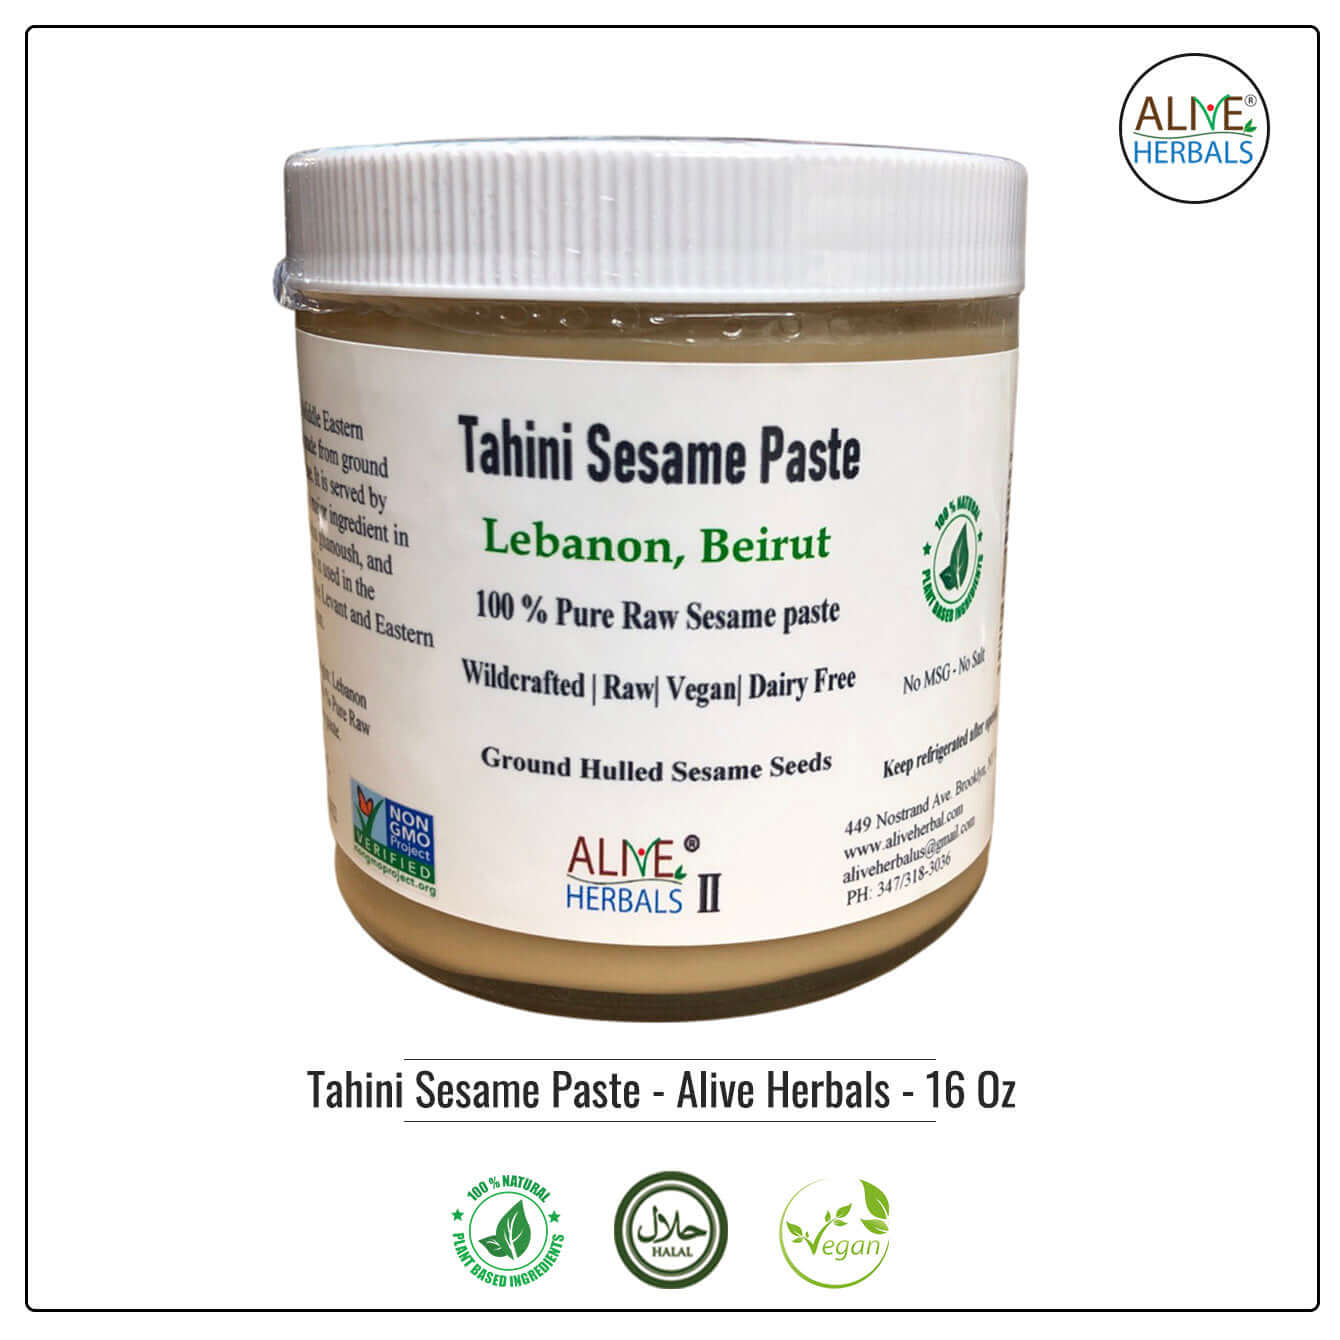 Tahini Sesame Paste - Alive Herbals - Buy at Natural Food Store | Alive Herbals.